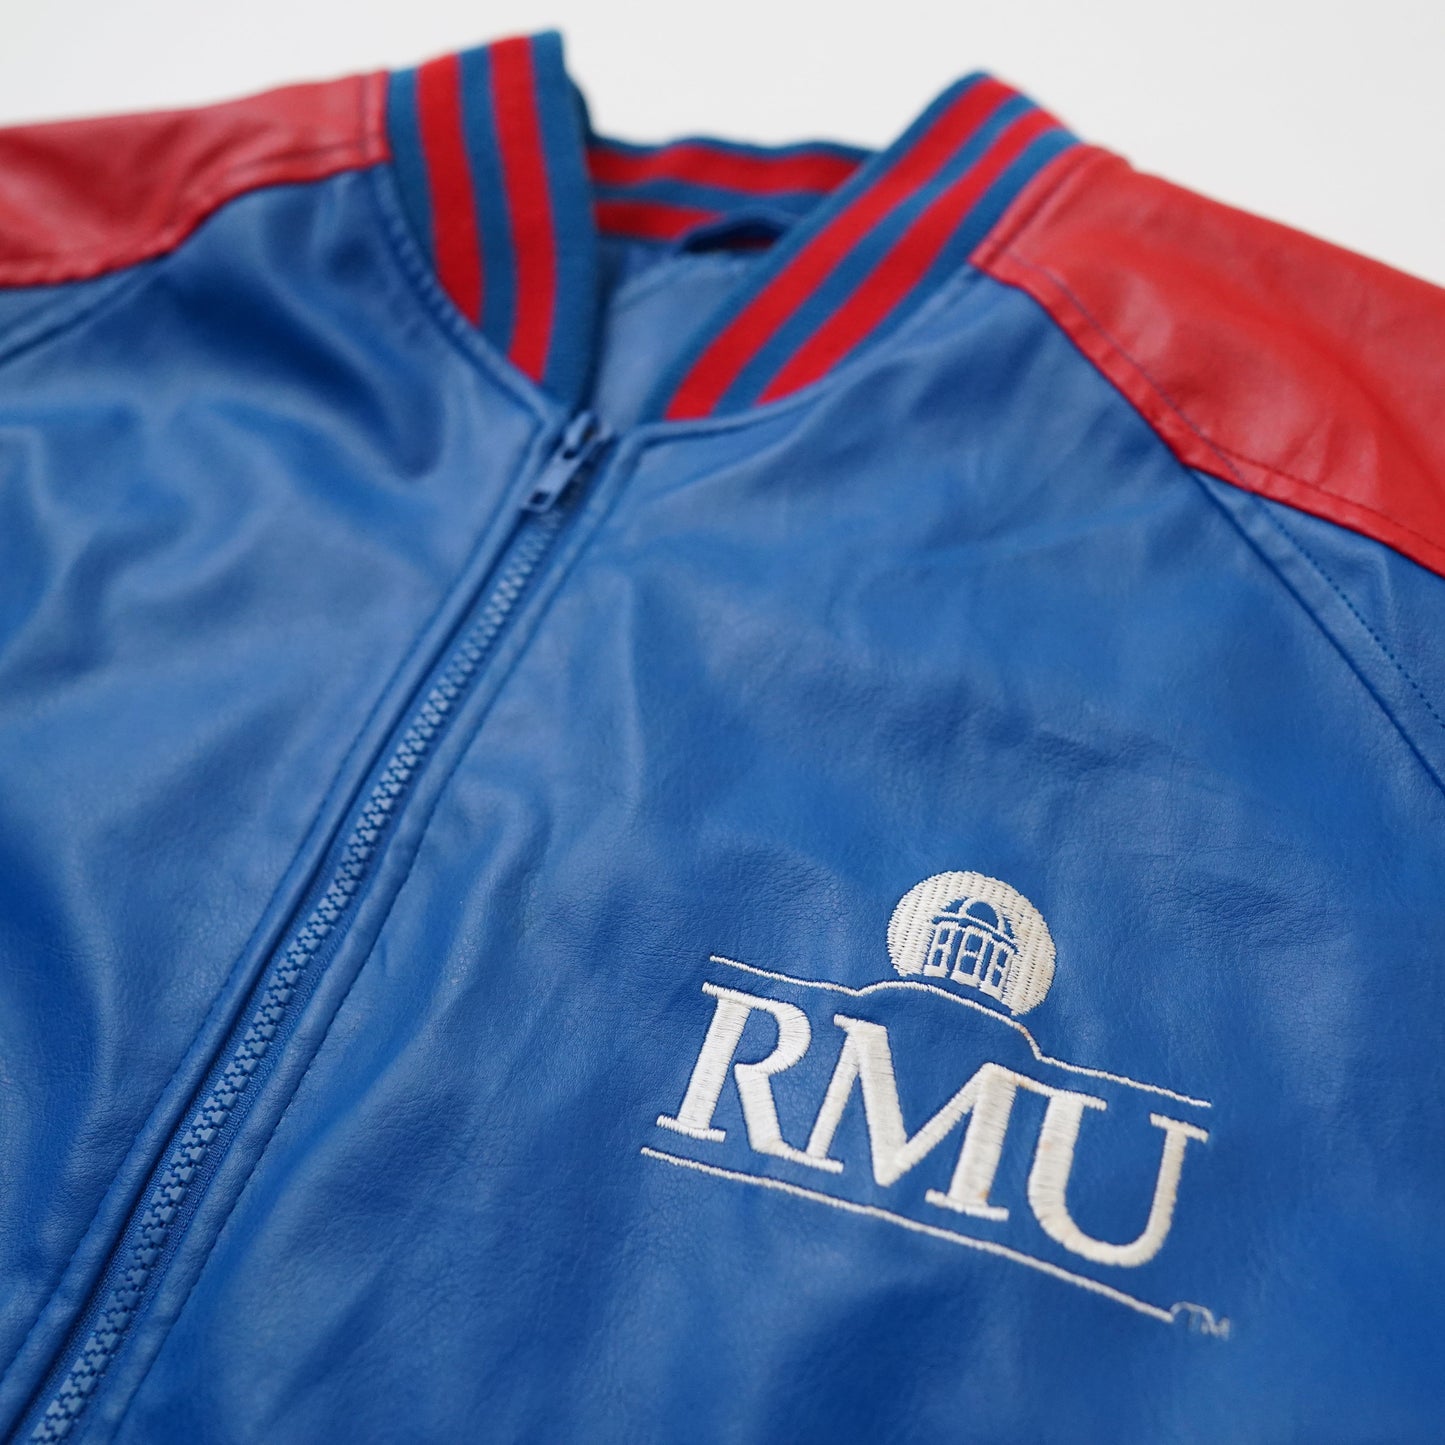 RMU lether jacket